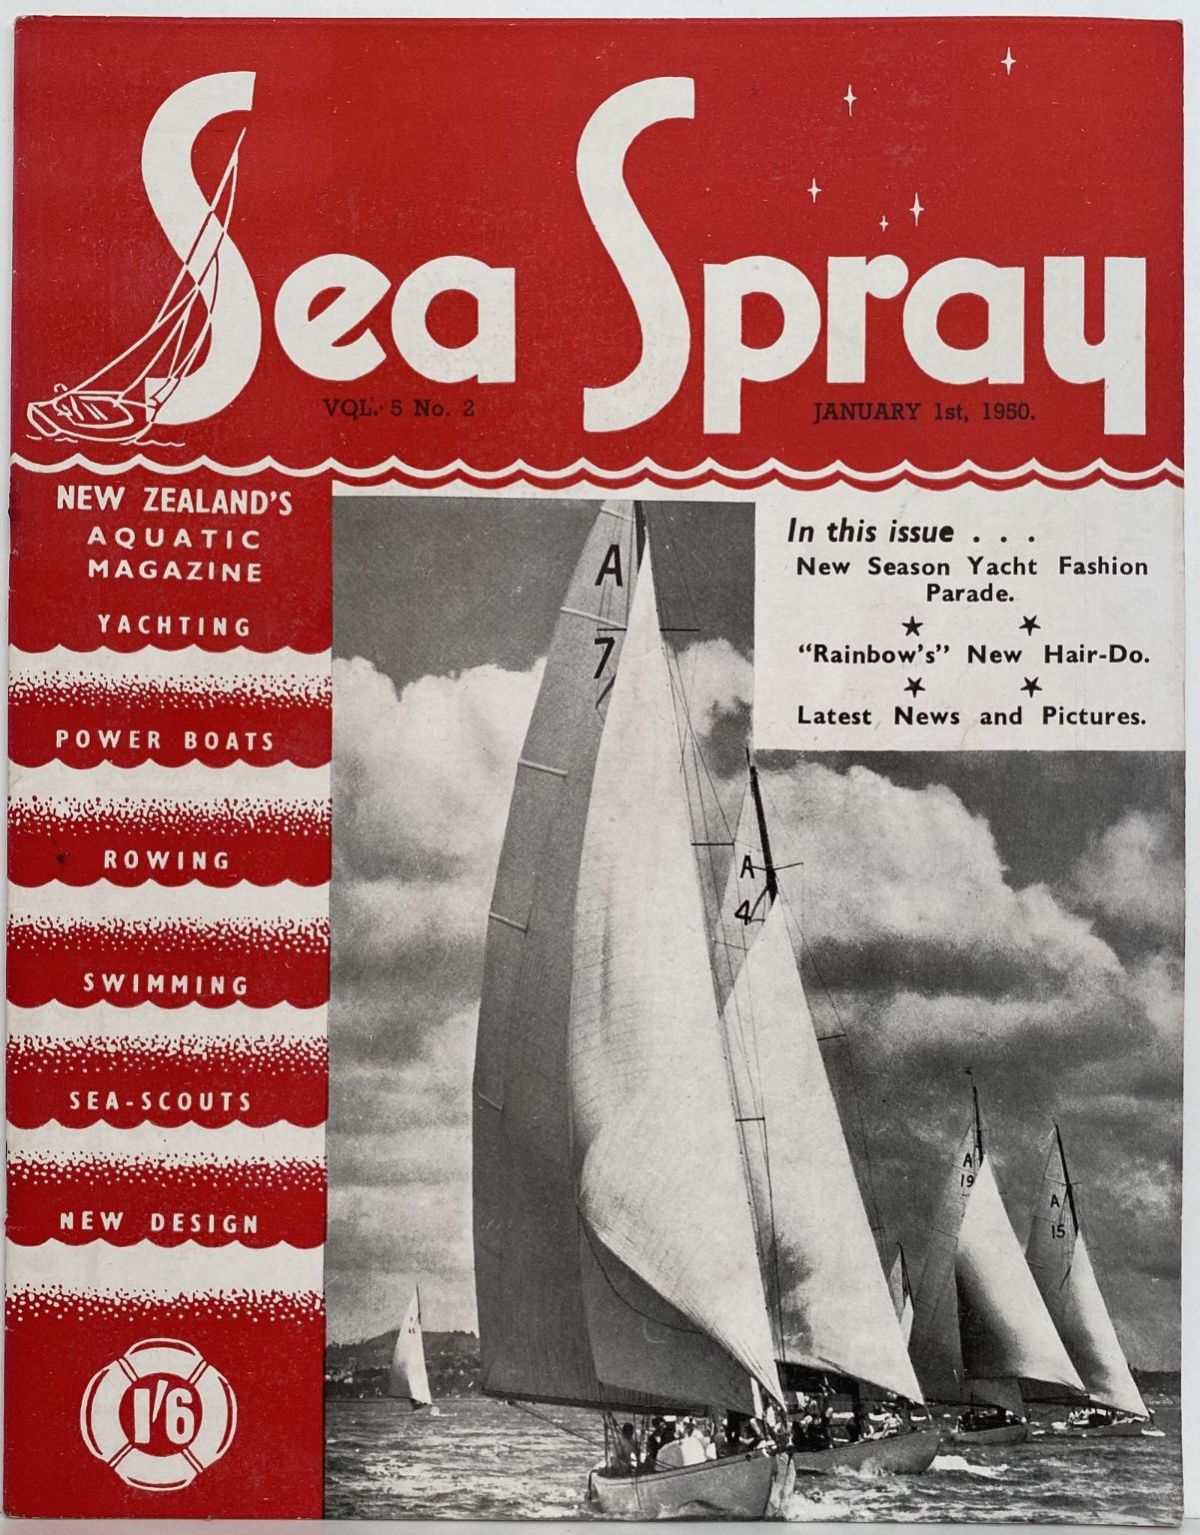 VINTAGE MAGAZINE: Sea Spray - Vol. 5, No. 2 - January 1950